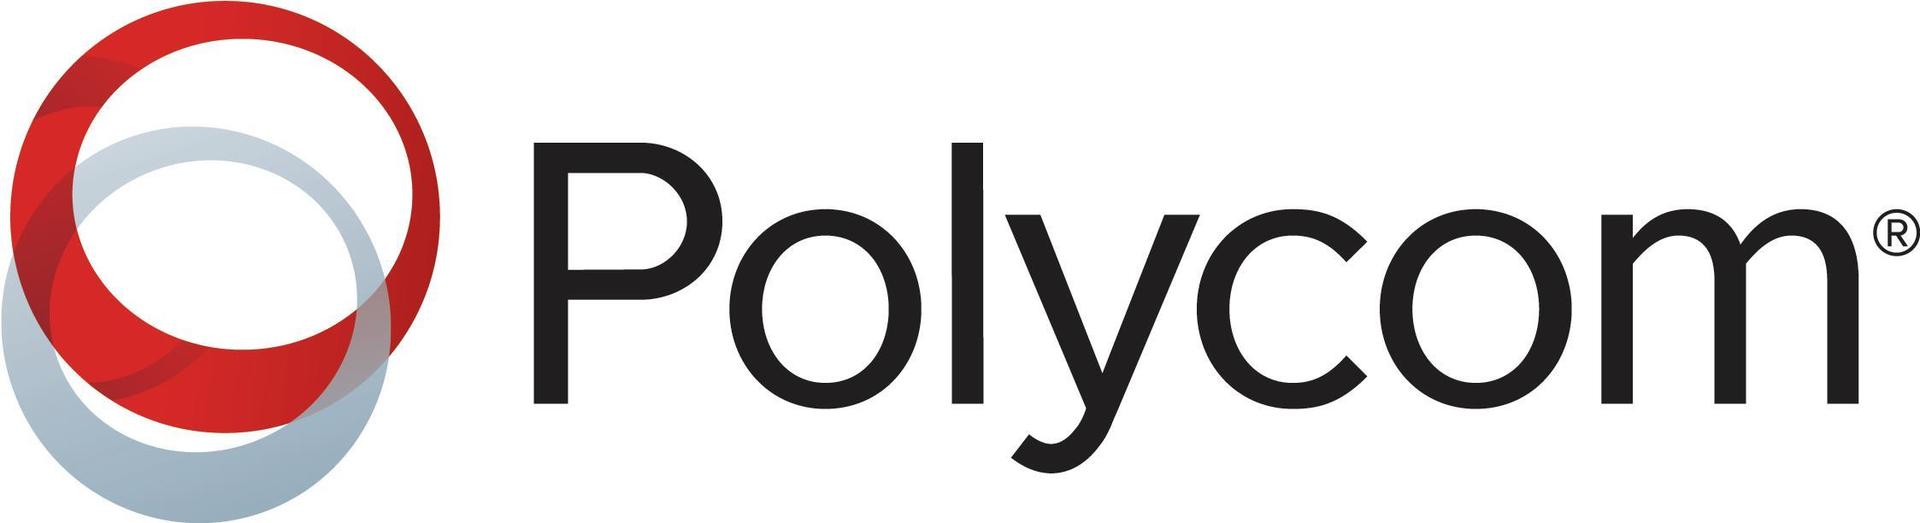 Polycom Premier - Serviceerweiterung - Erweiterter Teileaustausch - 1 Jahr - Lieferung - Geschäftszeiten - Reaktionszeit: am nächsten Arbeitstag (4870-48300-112)